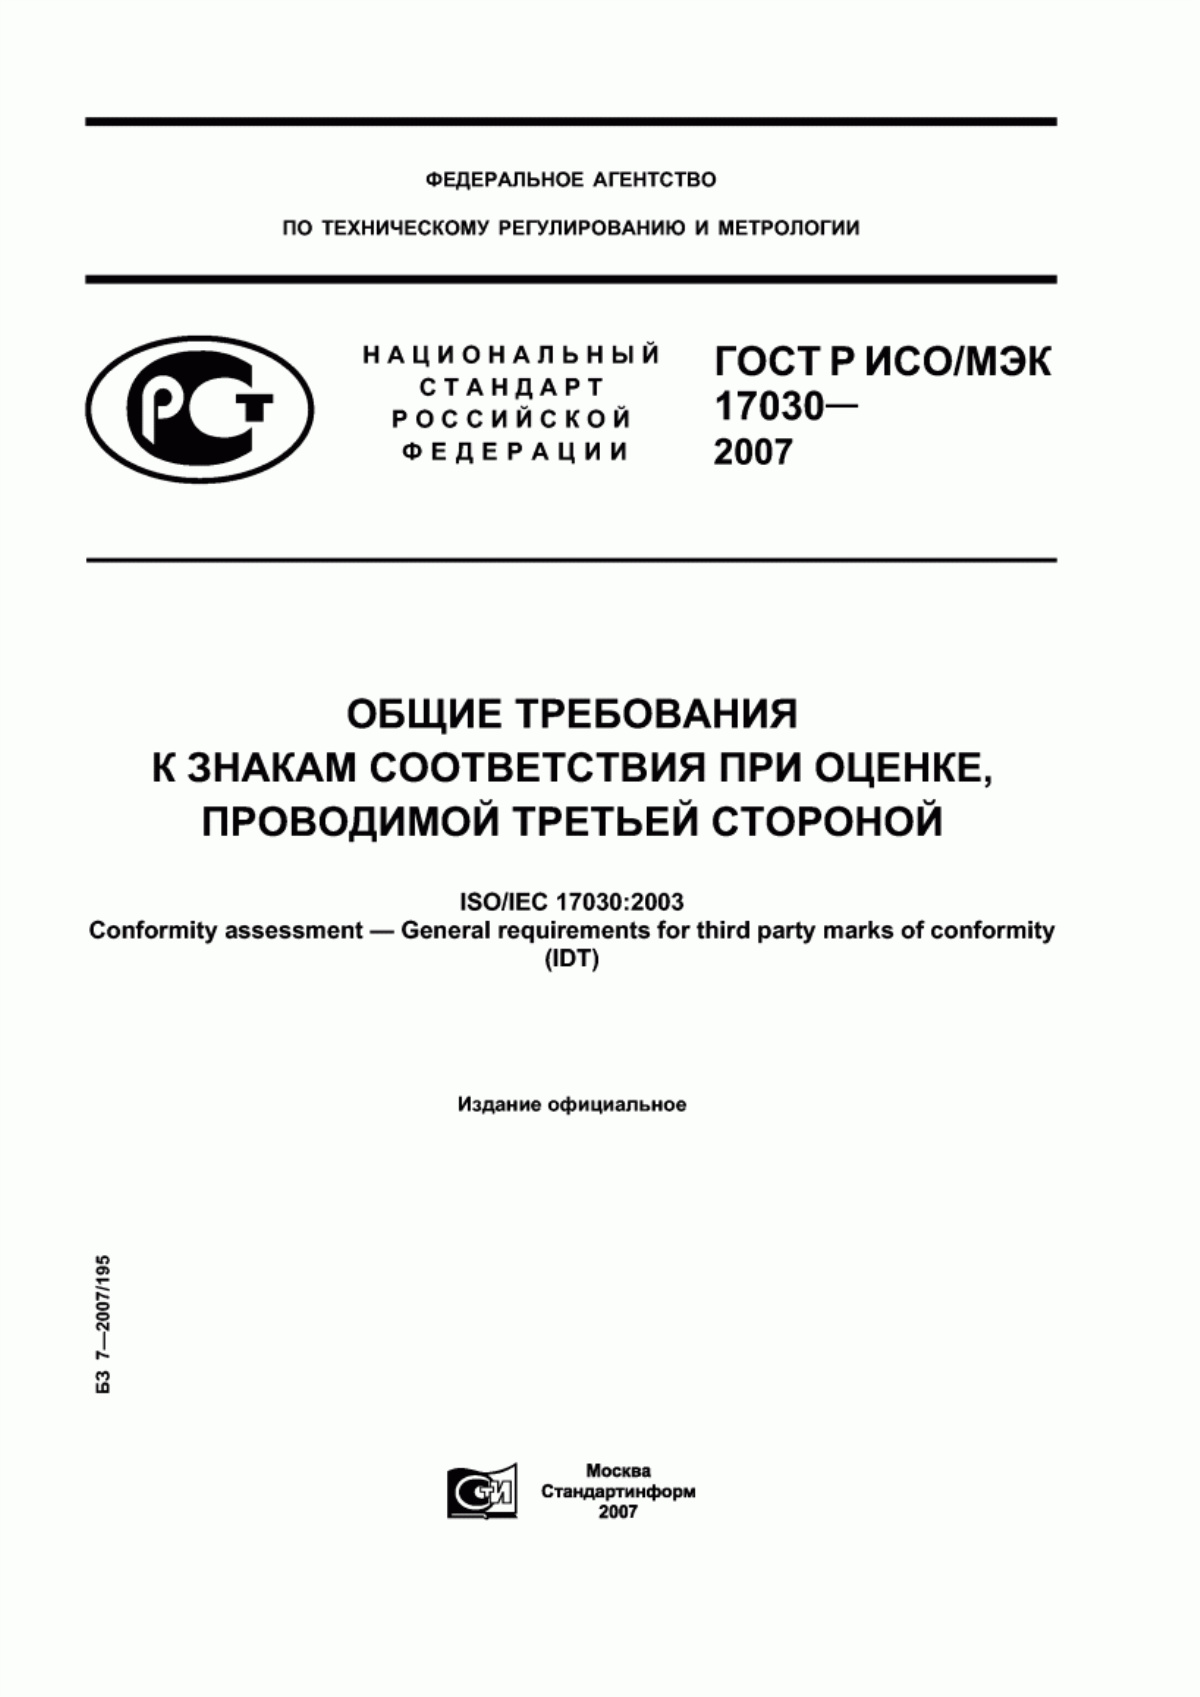 ГОСТ Р ИСО/МЭК 17030-2007 Общие требования к знакам соответствия при оценке, проводимой третьей стороной